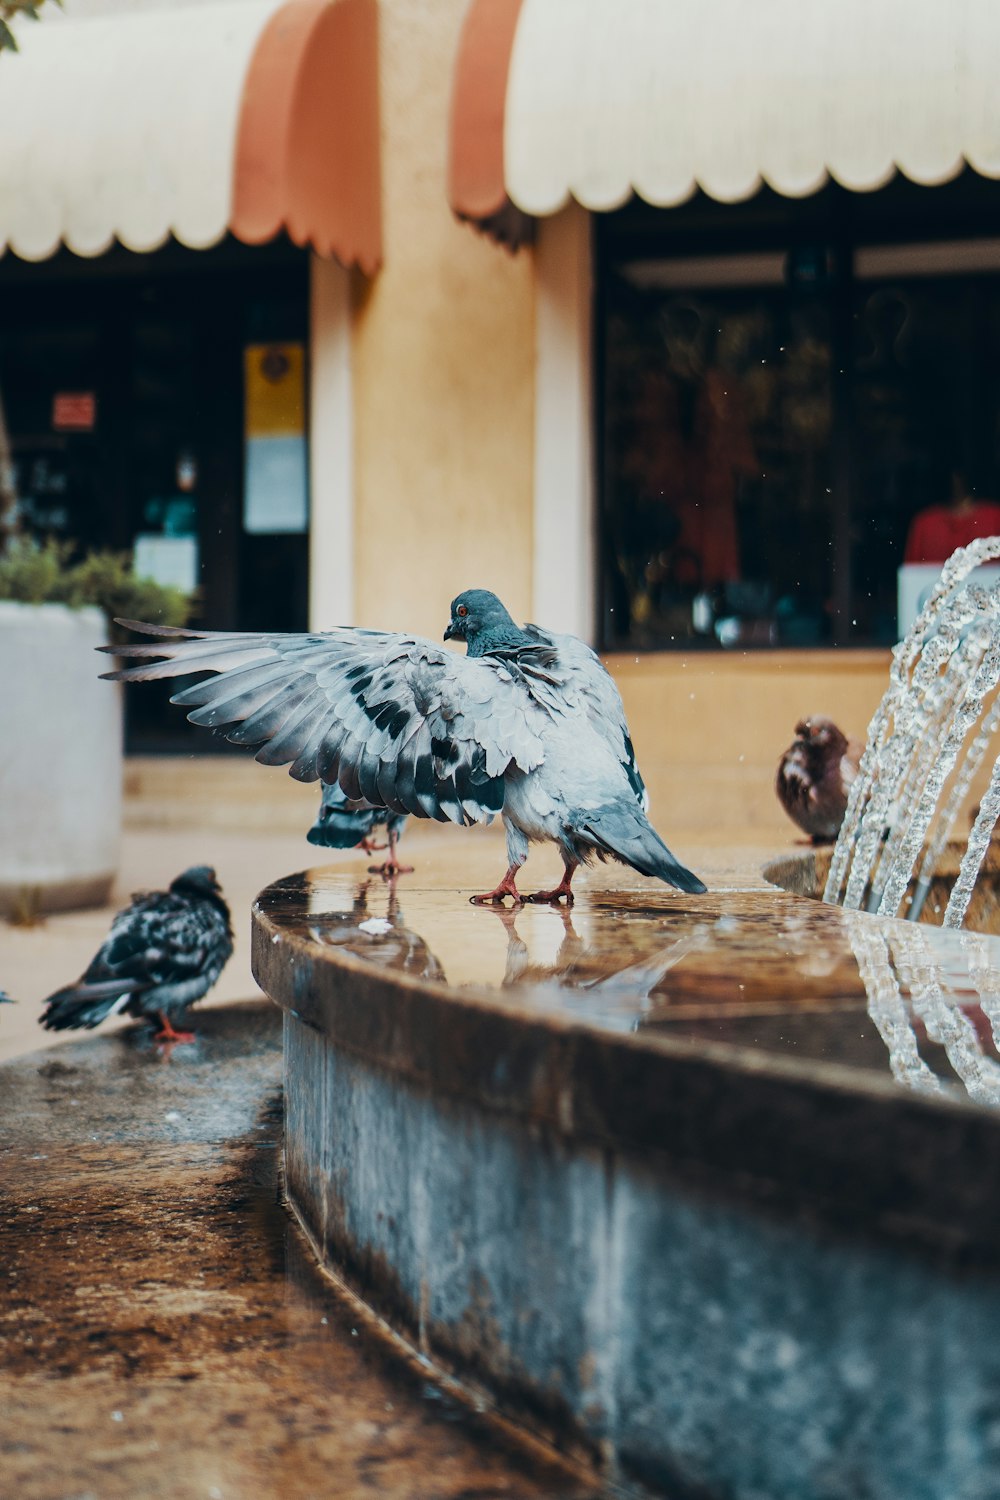 mehrere Tauben neben dem Wasserbrunnen im Freien